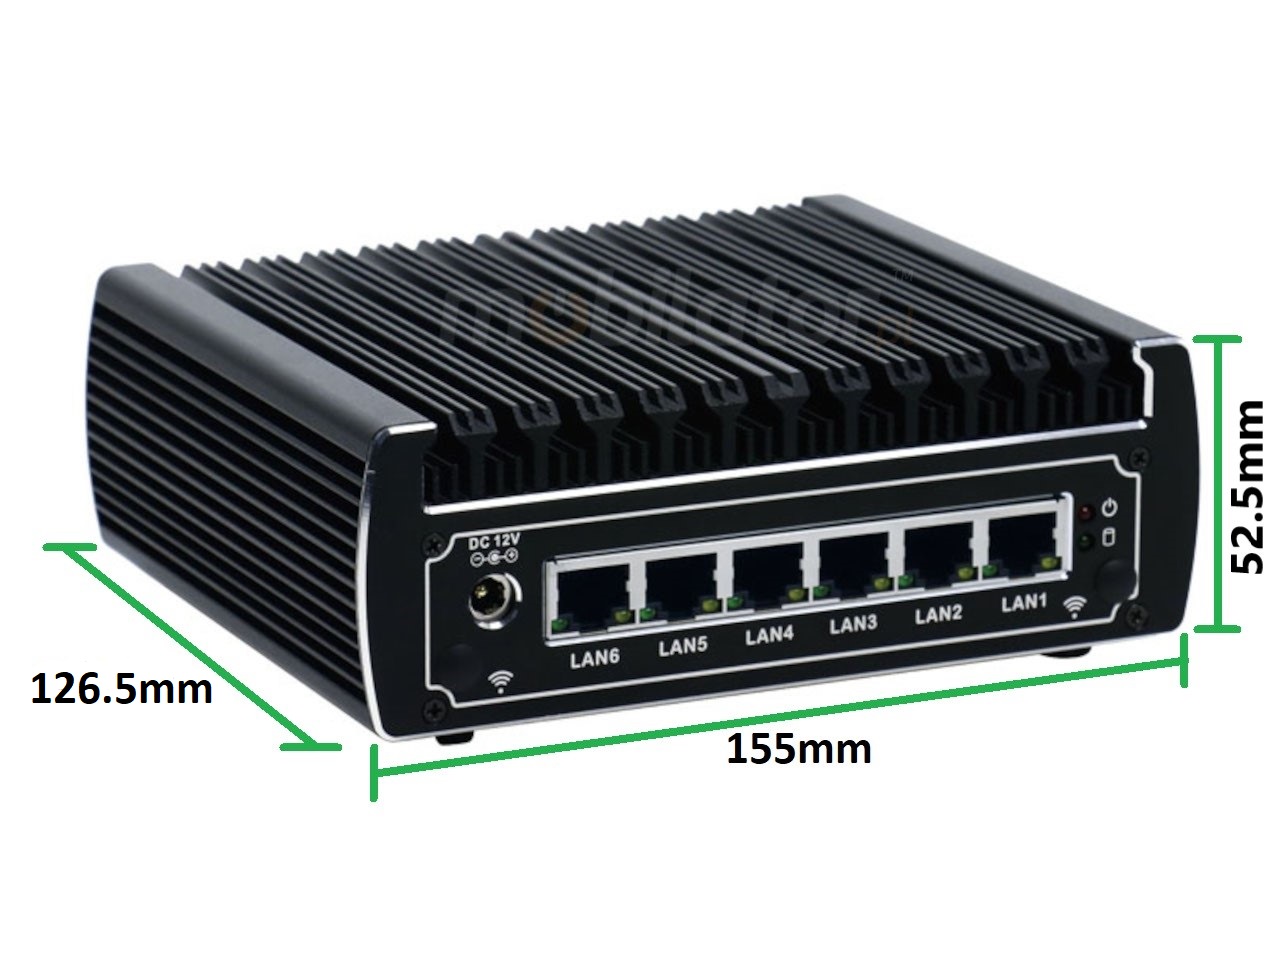   IBOX N133 v.5, wymiary, SSD, DDR4, przemysłowy, mały, szybki, niezawodny, fanless, industrial, small, LAN, INTEL i3